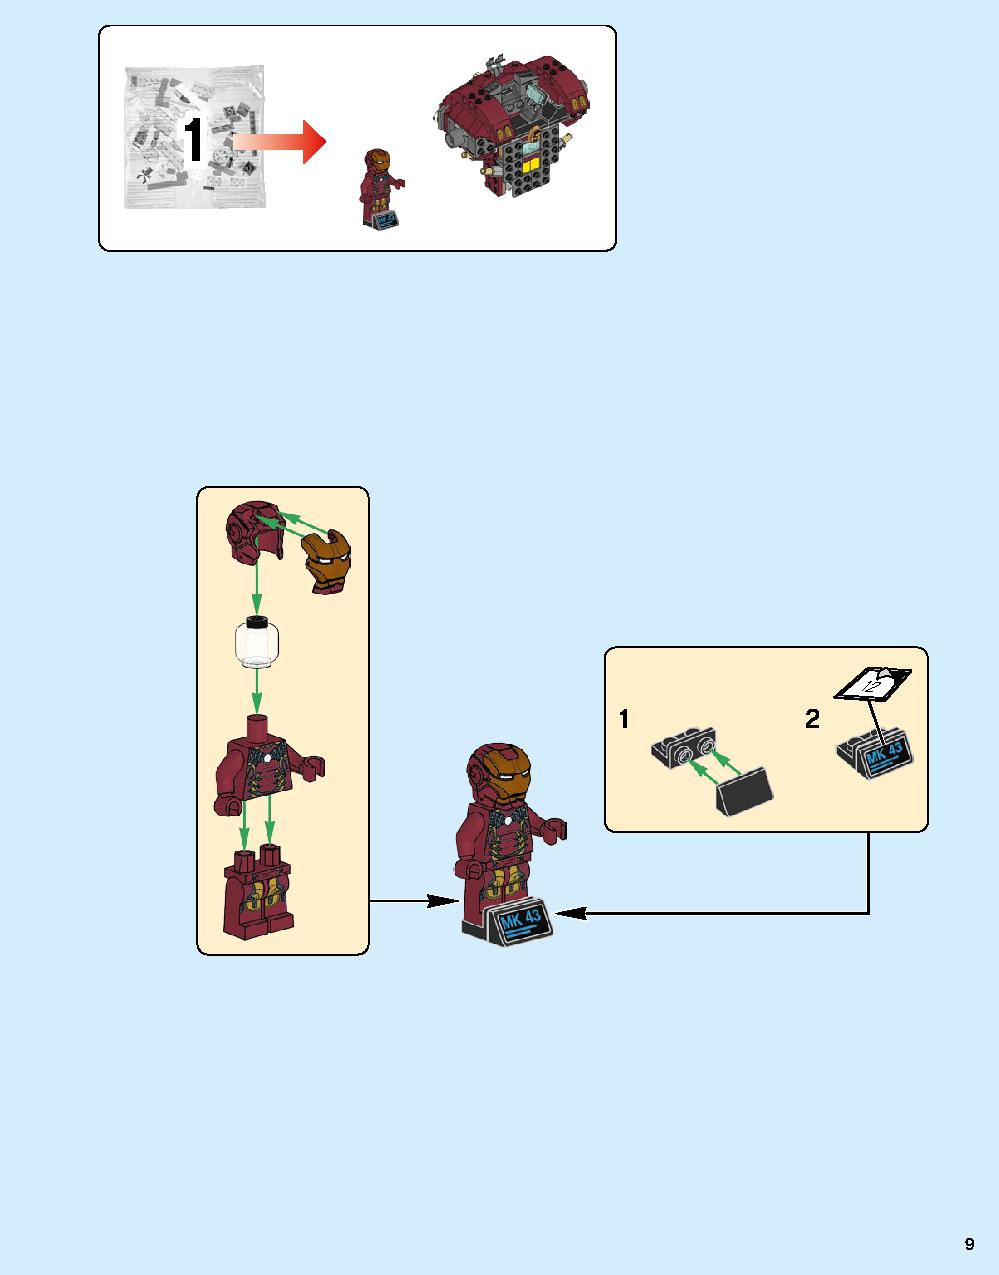 ハルクバスター：ウルトロン・エディション 76105 レゴの商品情報 レゴの説明書・組立方法 9 page